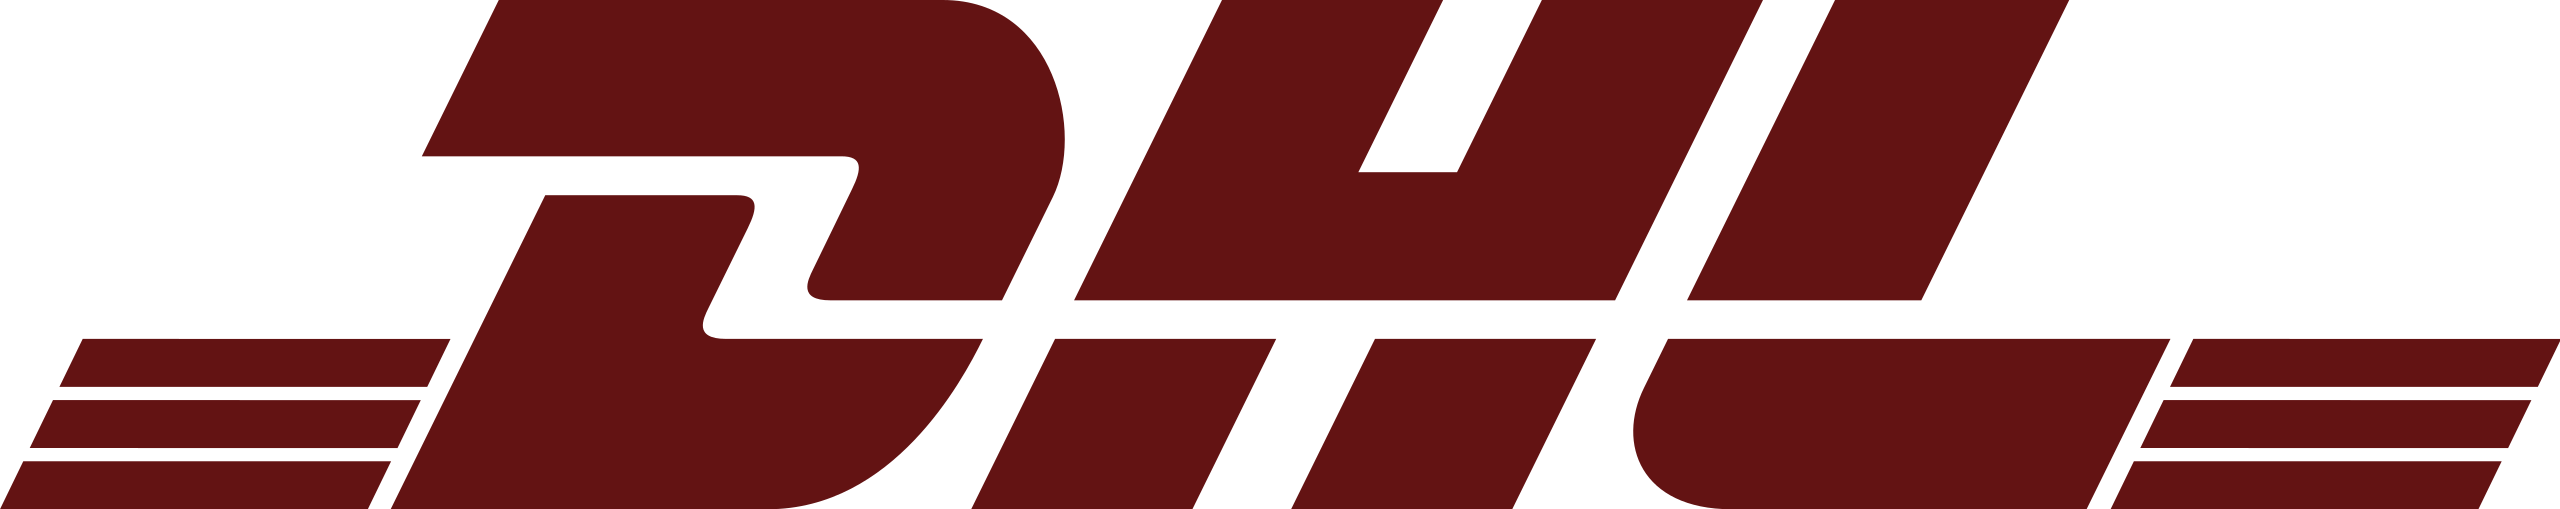 DHL Logo PNG Image File